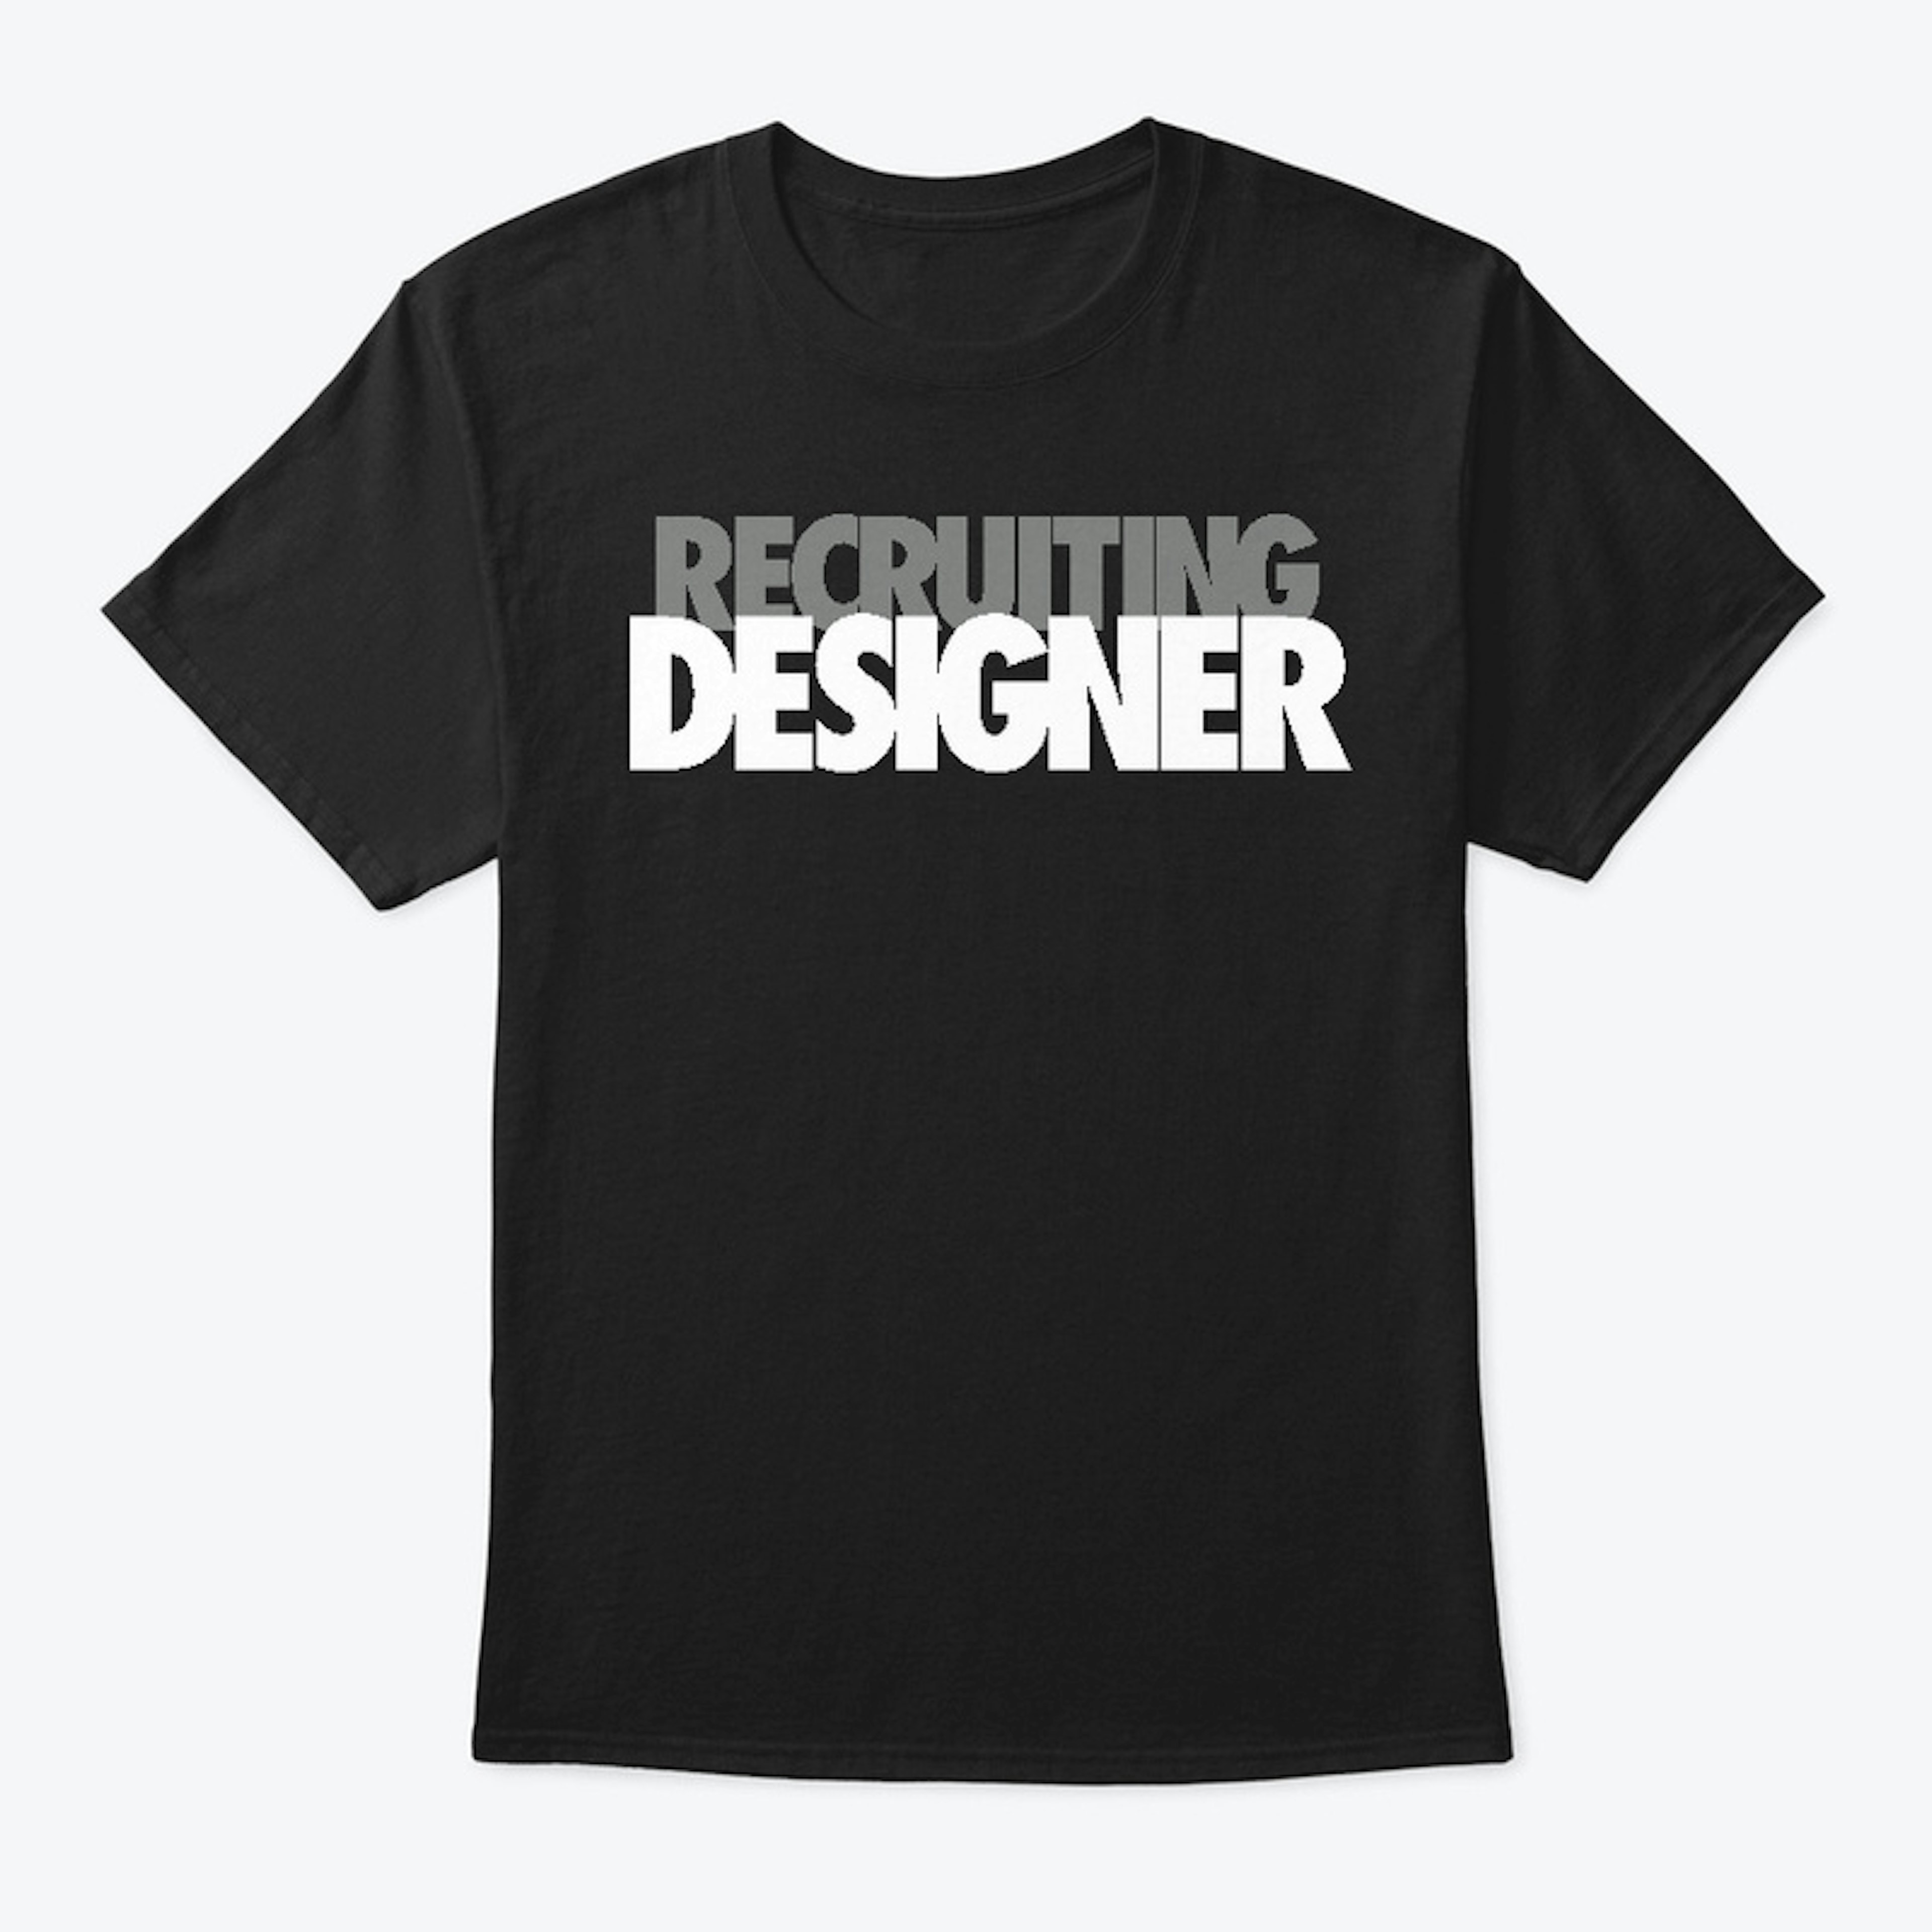 Recruiting Designer Tee